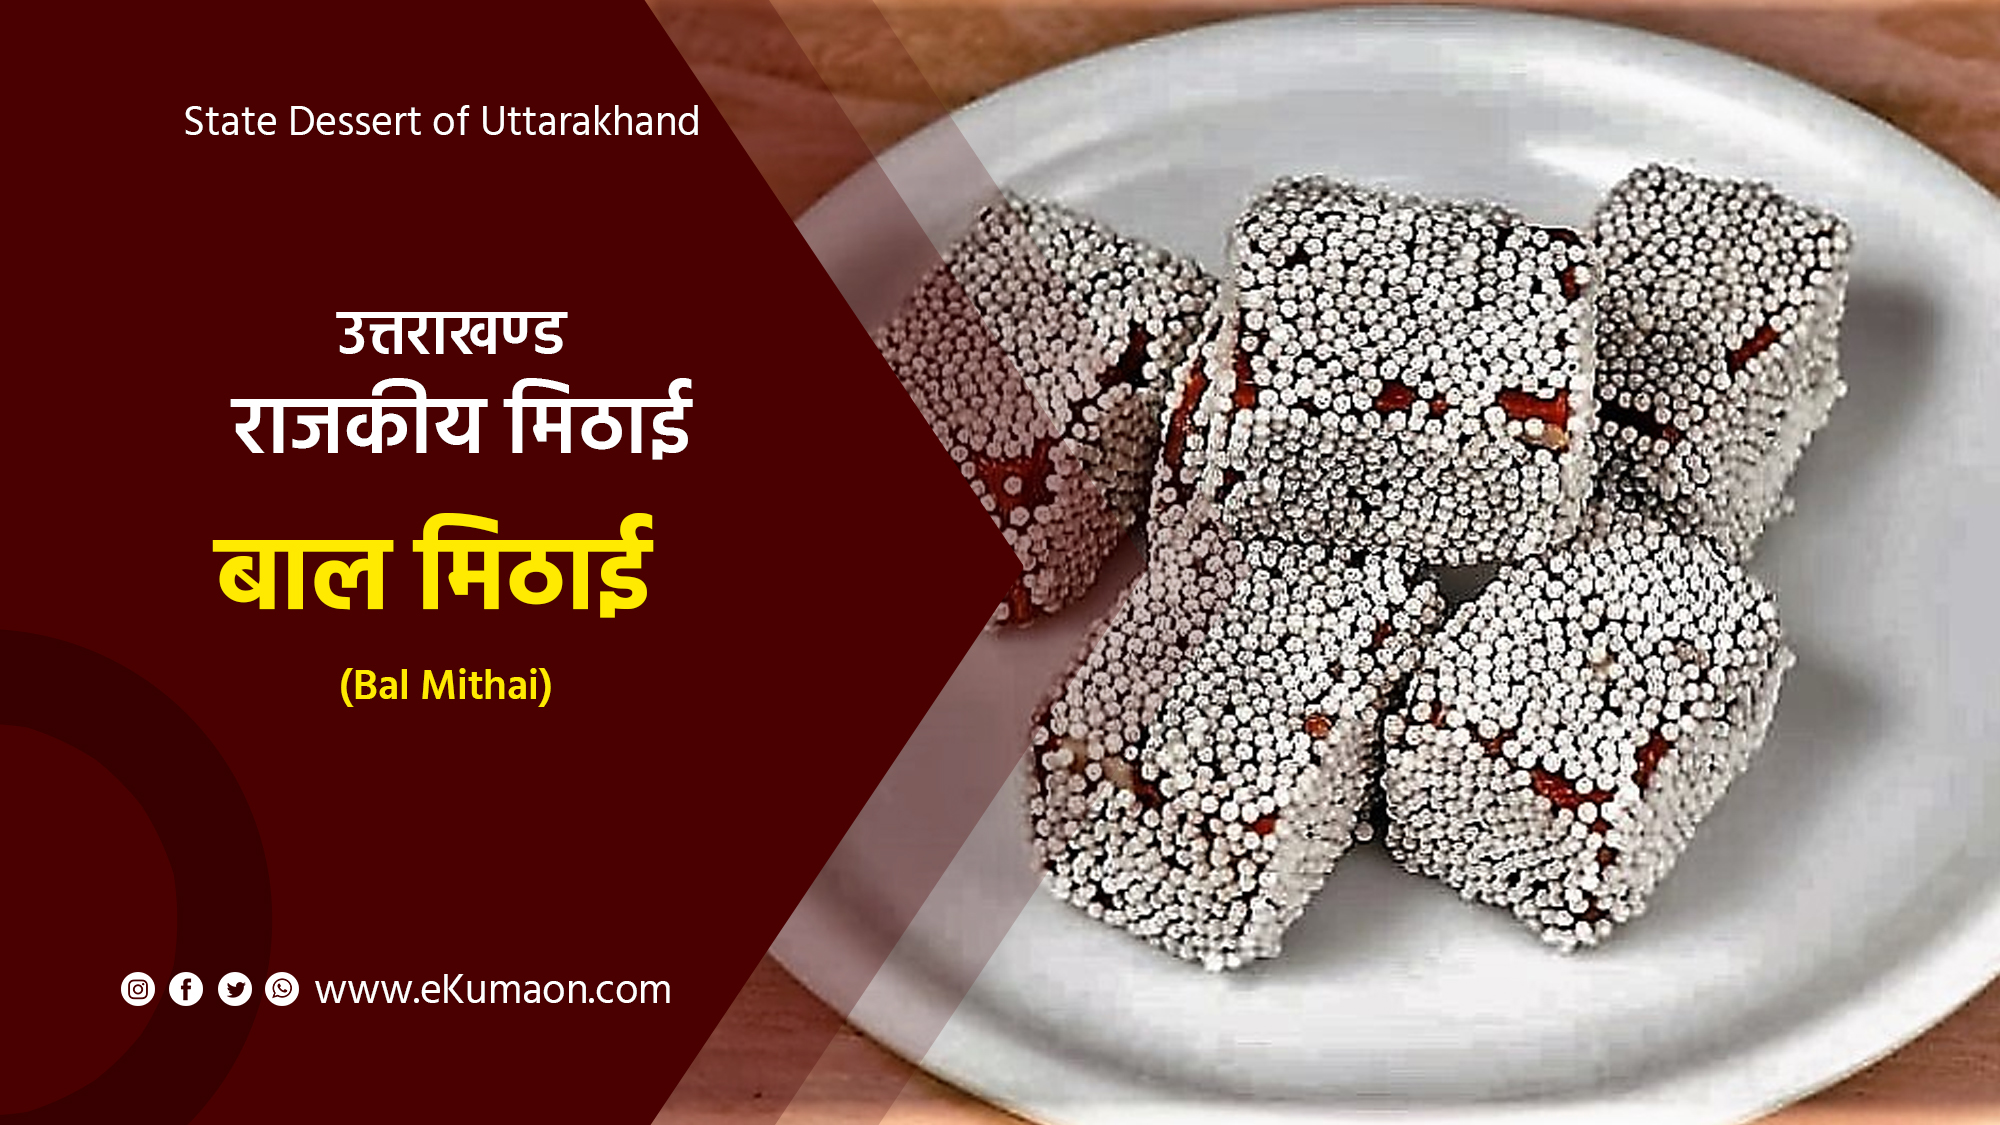 State Dessert of Uttarakhand